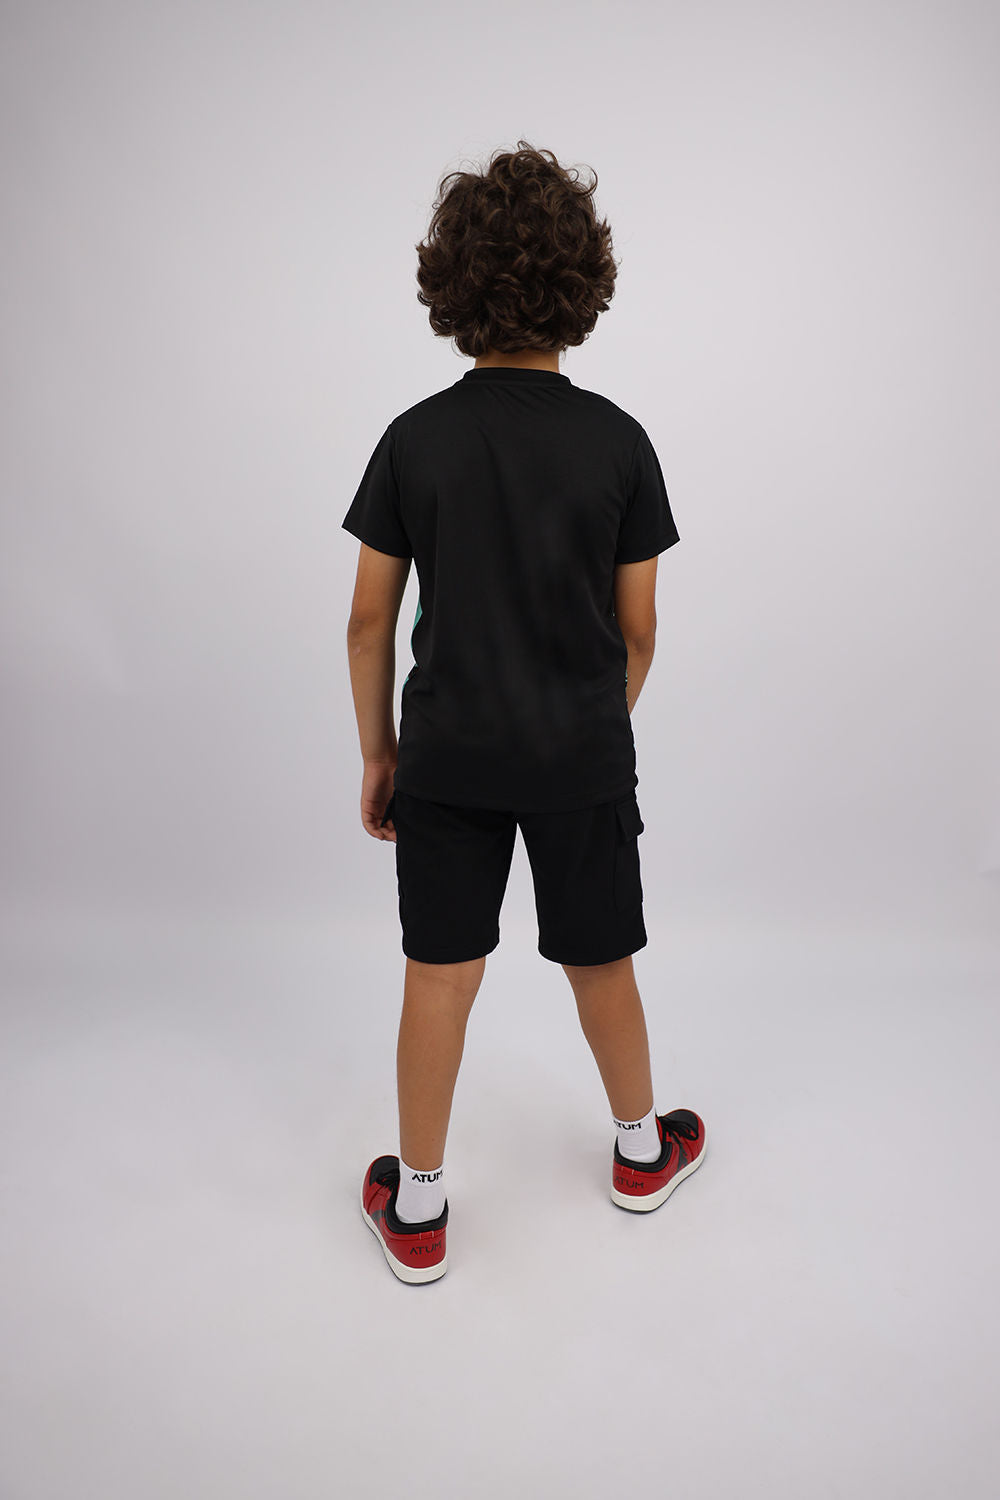 Atum Boy's Premium Shorts